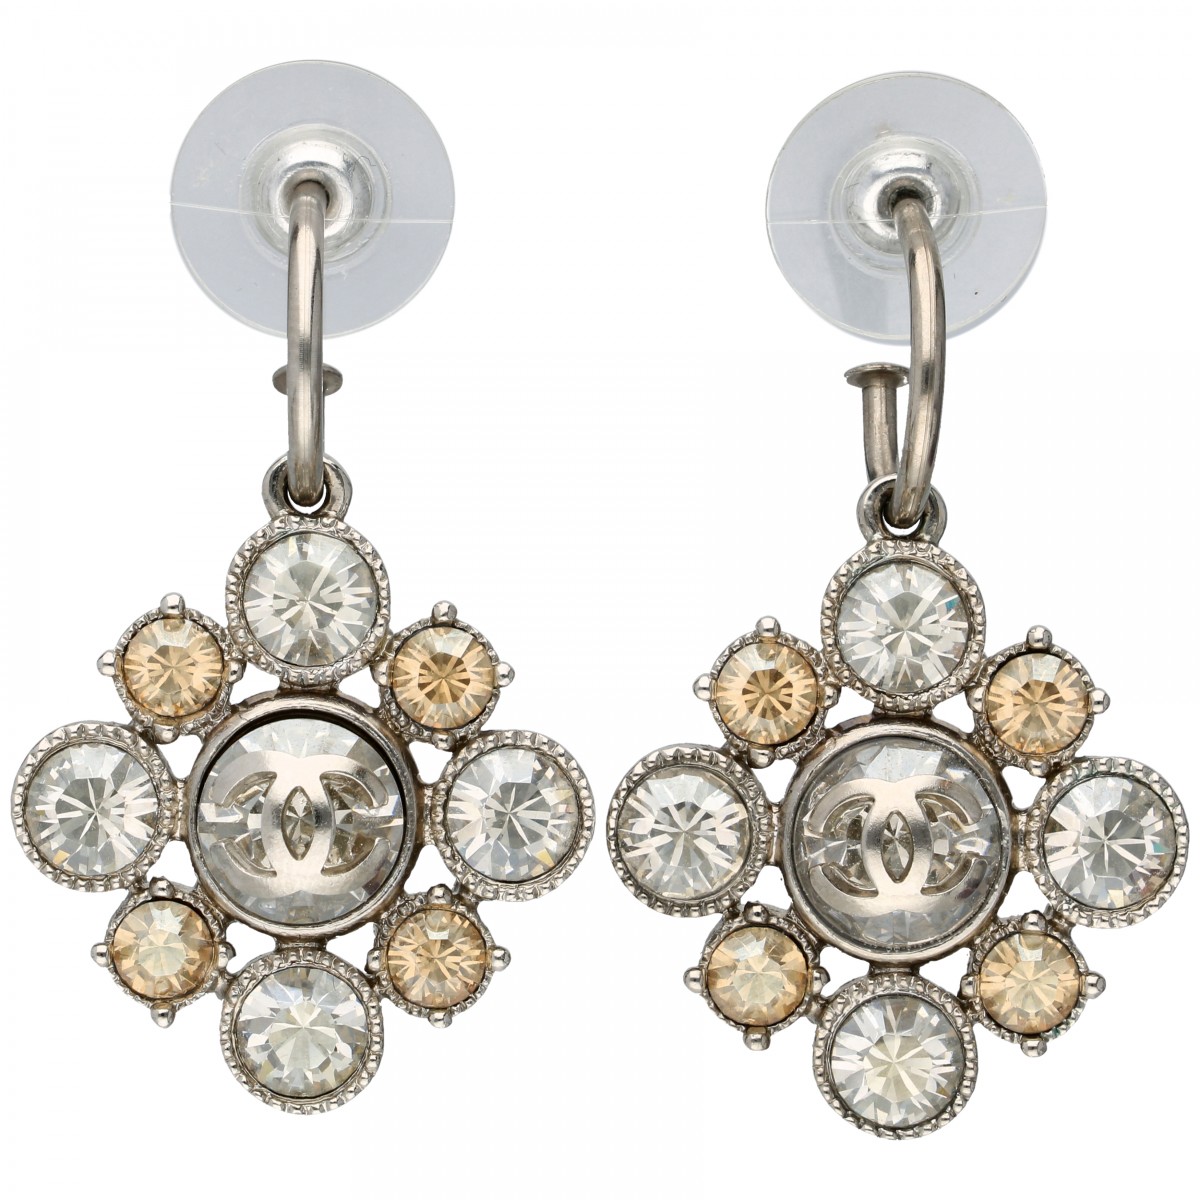 Chanel CC Crystal Flower zilverkleurige oorbellen bezet met helderwitte en gele strass-stenen.